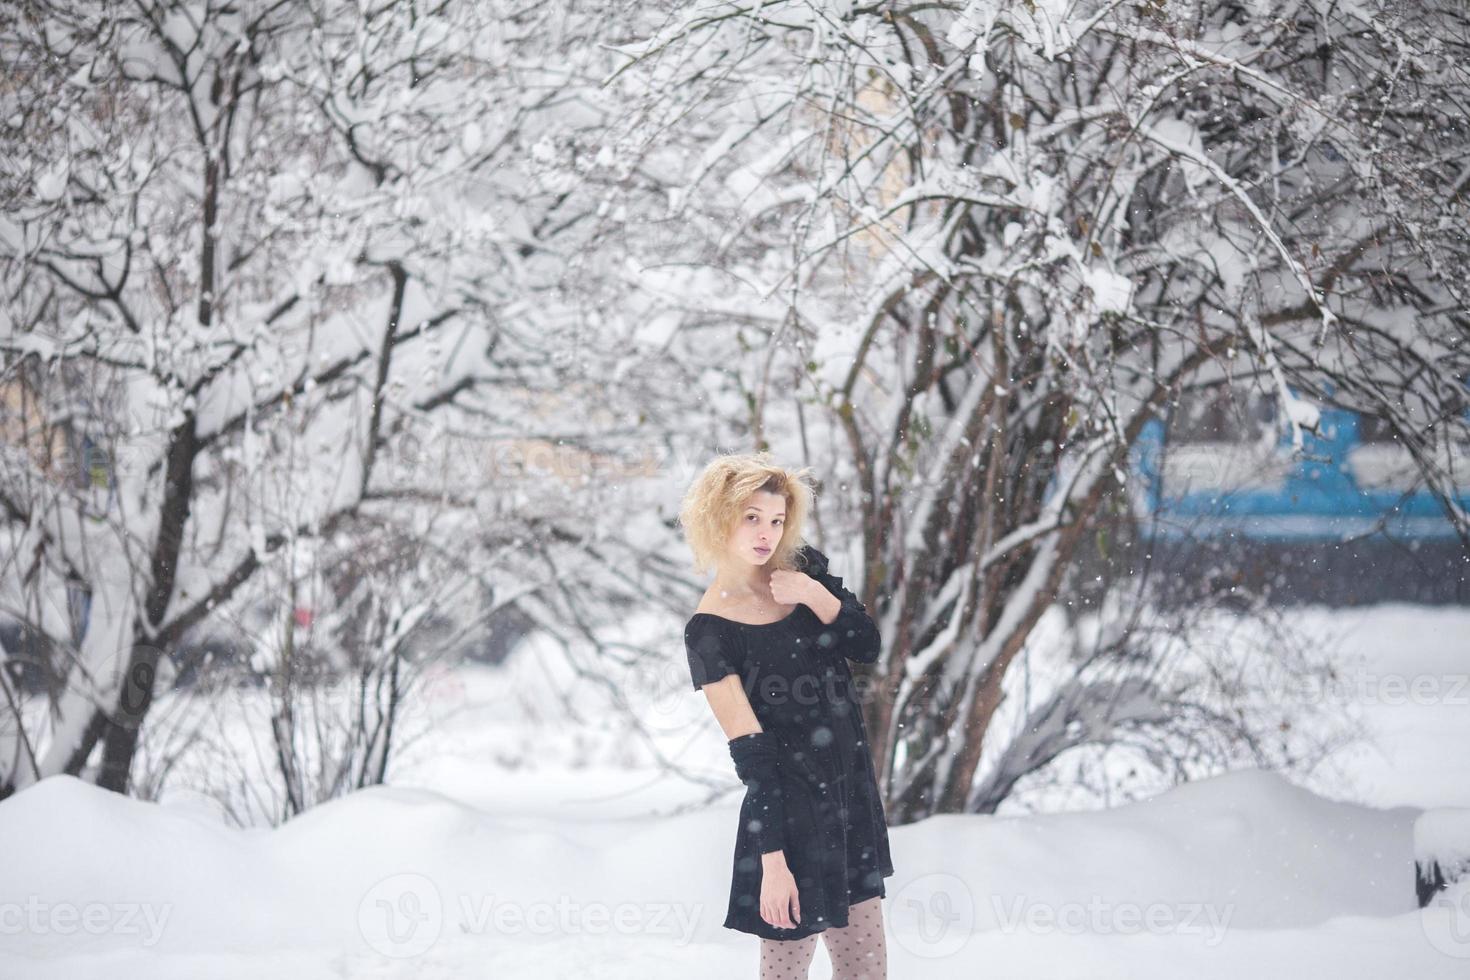 Frau im Schnee foto